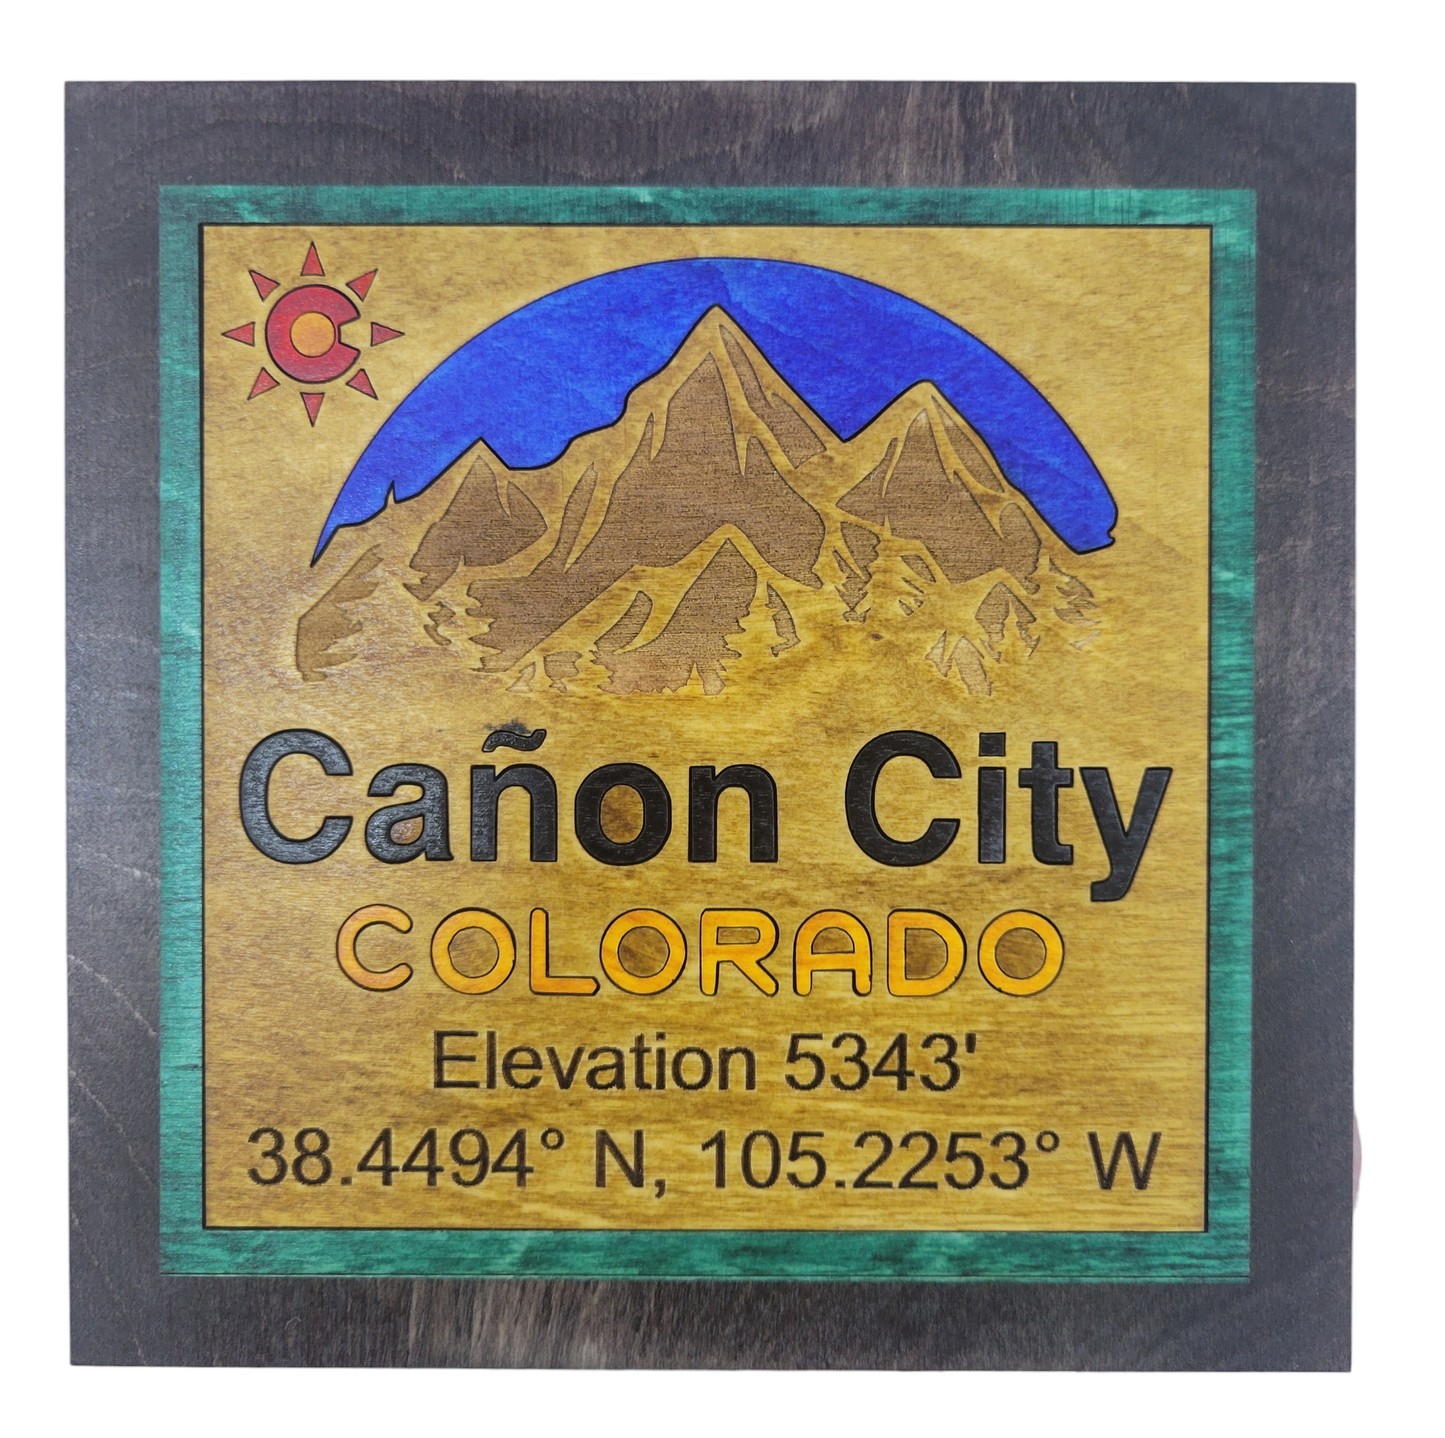 Canon City Colorado, Square 5.75"